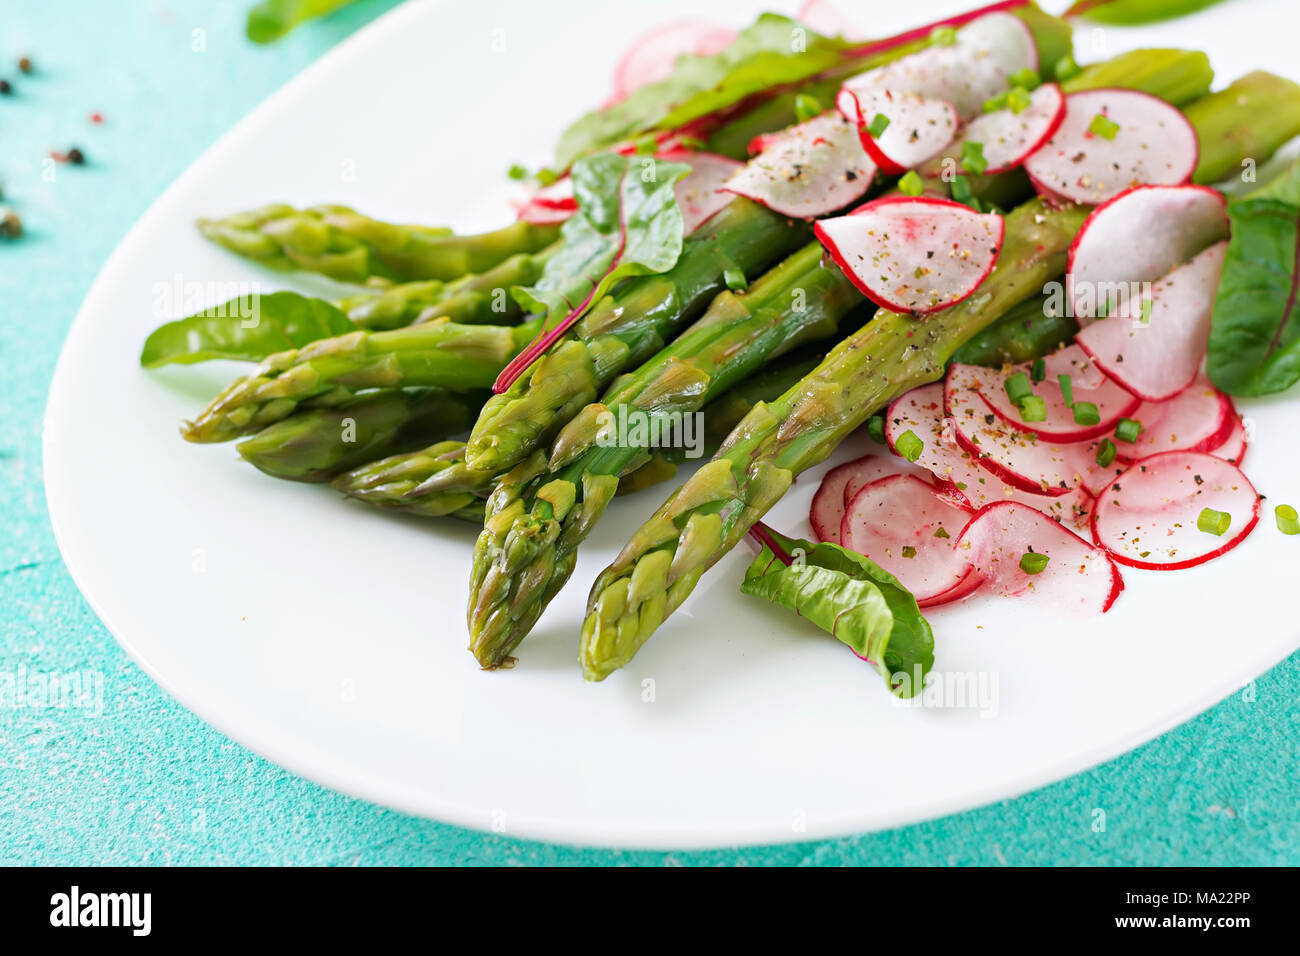 Insalata di asparagi con radicchio e bietole. Cucina vegana. Cibo sano. Foto Stock